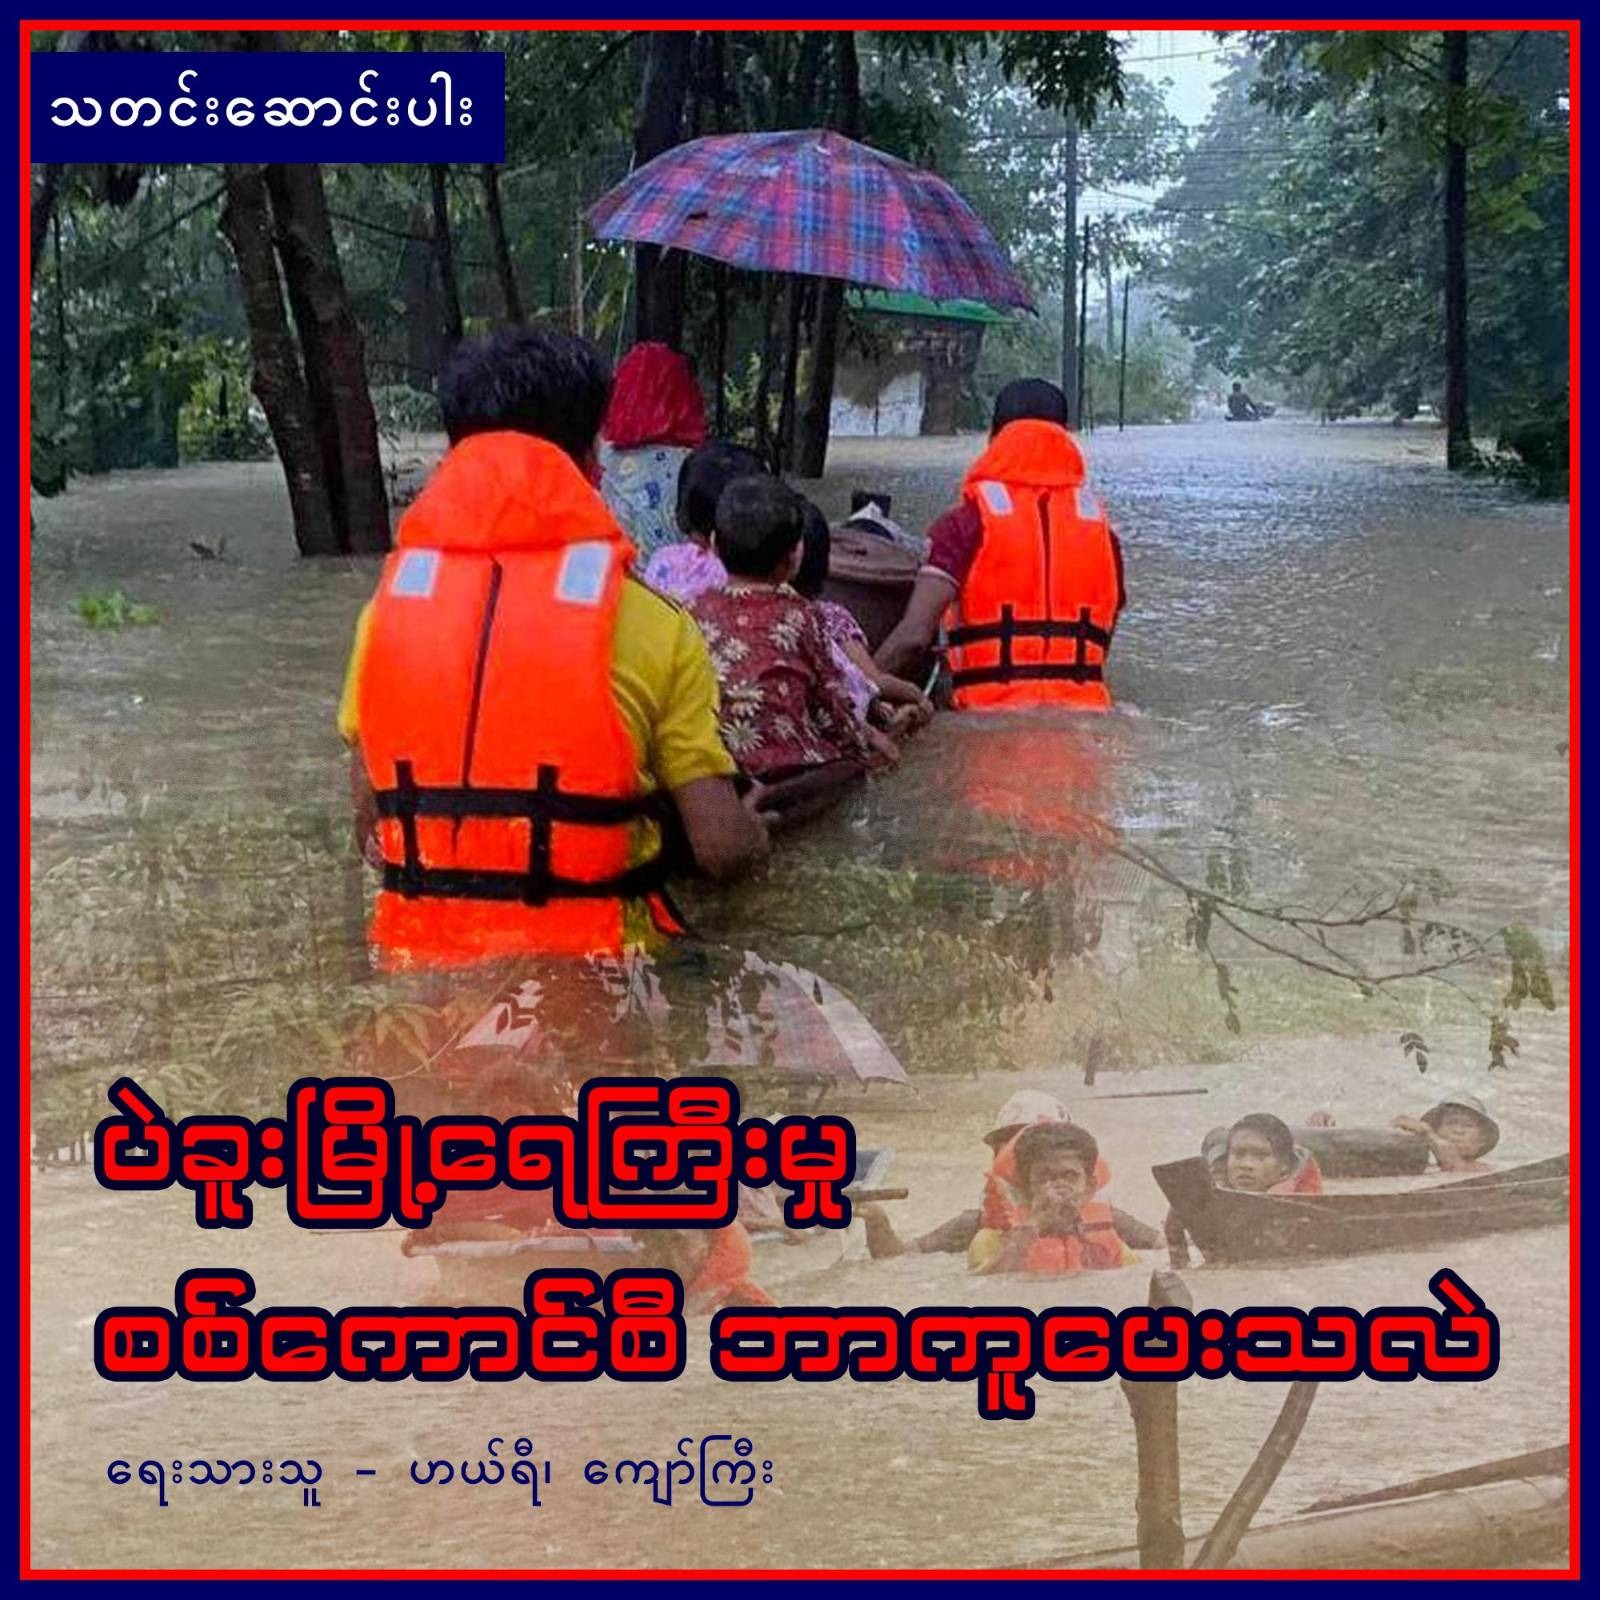 ပဲခူးမြို့ ရေကြီးမှု စစ်ကောင်စီ ဘာကူပေးသလဲ